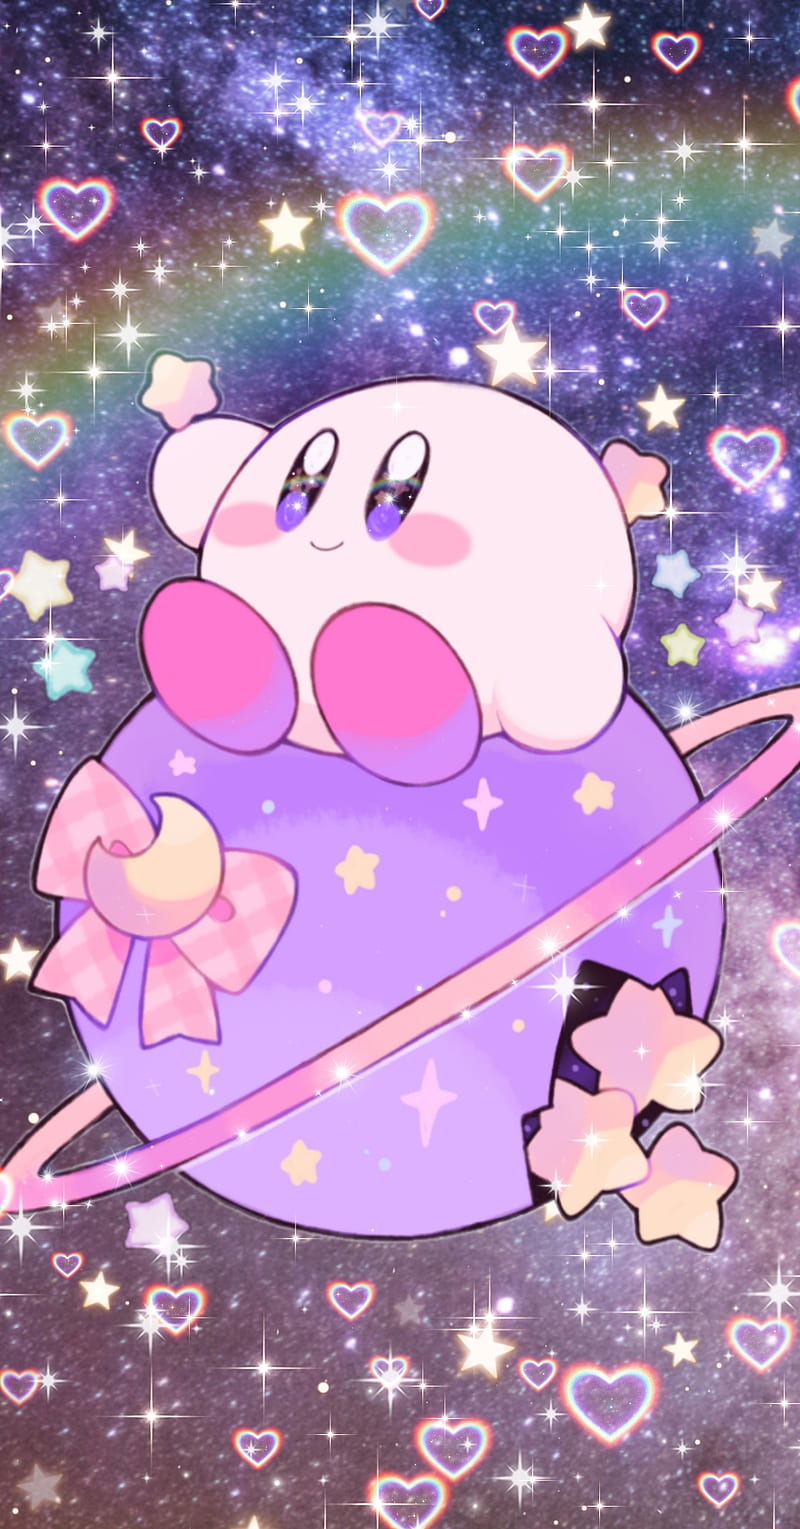 Trò chơi Kirby là một cuộc phiêu lưu đầy màu sắc và hấp dẫn, đưa bạn vào thế giới của những sinh vật dễ thương và kỳ diệu. Hãy đón xem hình ảnh liên quan đến trò chơi Kirby để trải nghiệm những giây phút thú vị cùng người bạn hồng này!